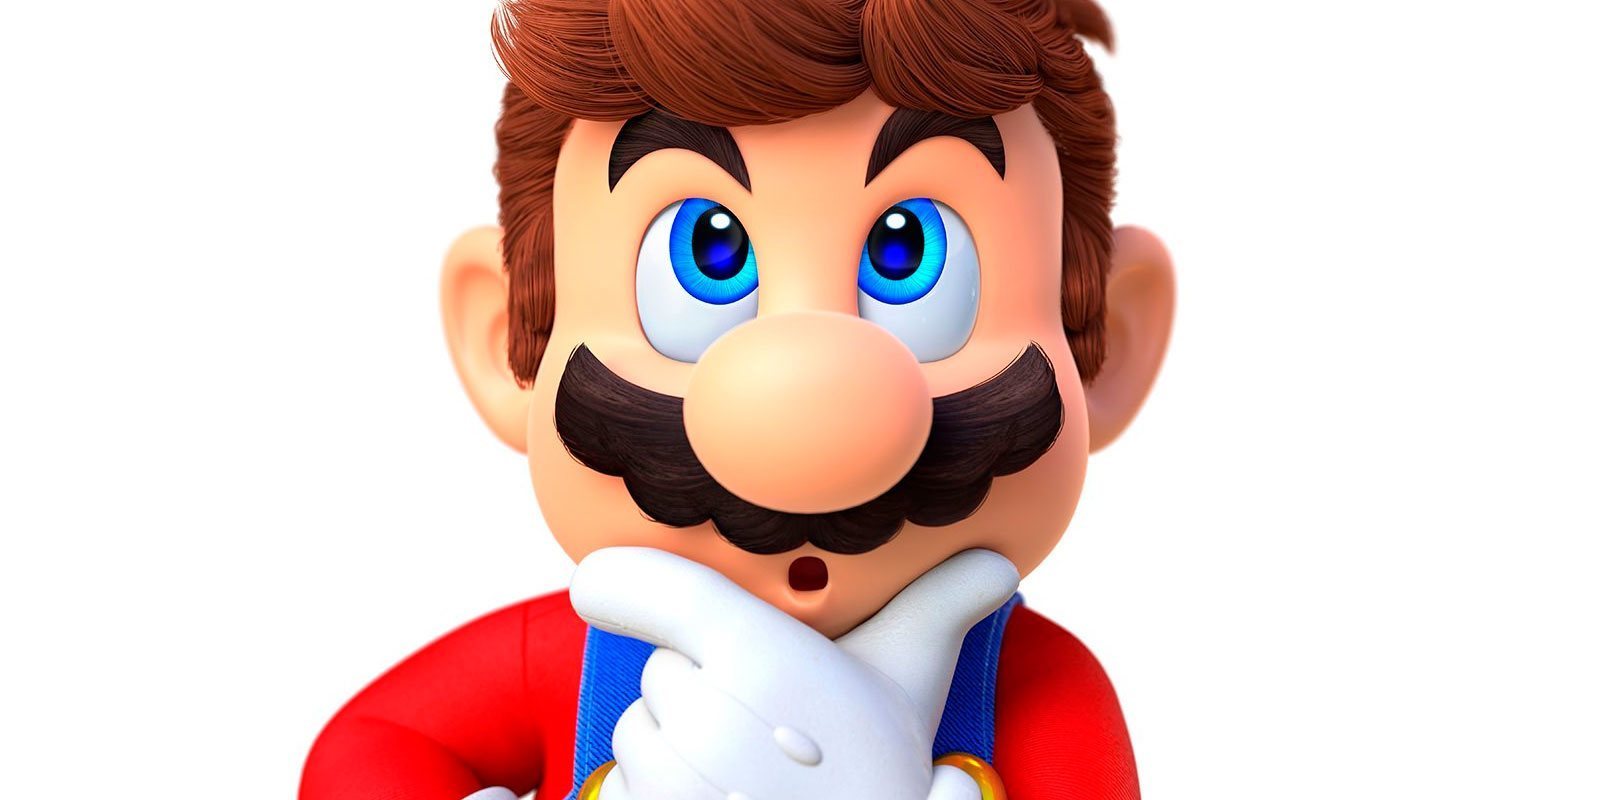 La versión battle royale de 'Super Mario' desaparece tras reclamación de Nintendo